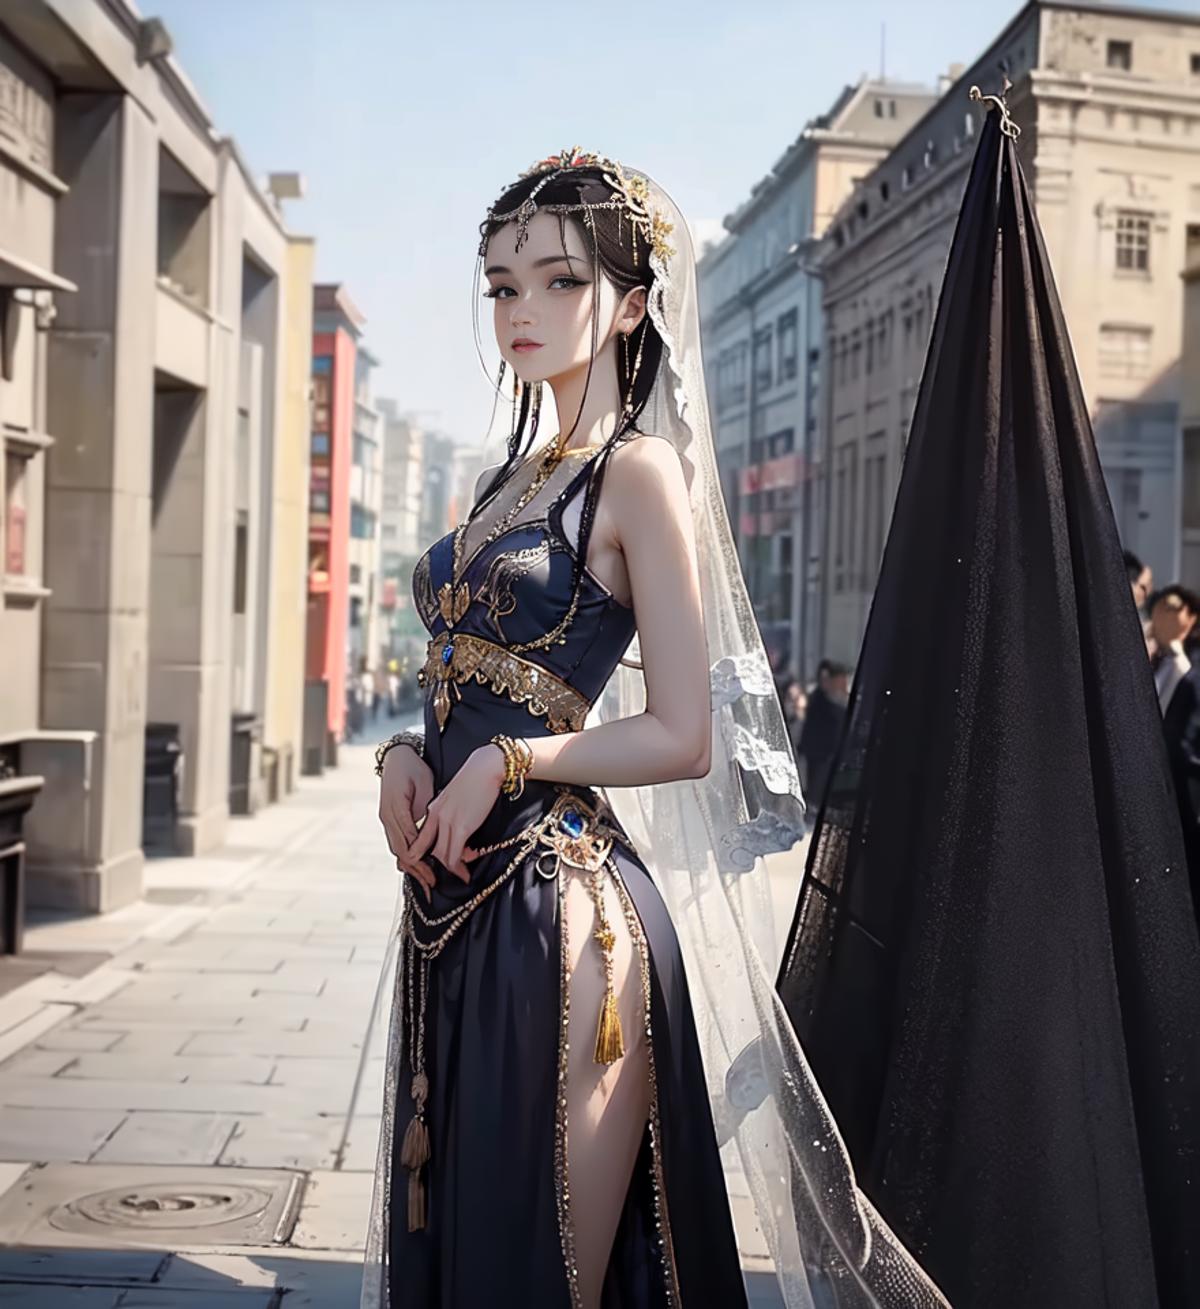 [Lah] China Goddess Fashion (敦煌风汉服新风格) image by Ai_BnB